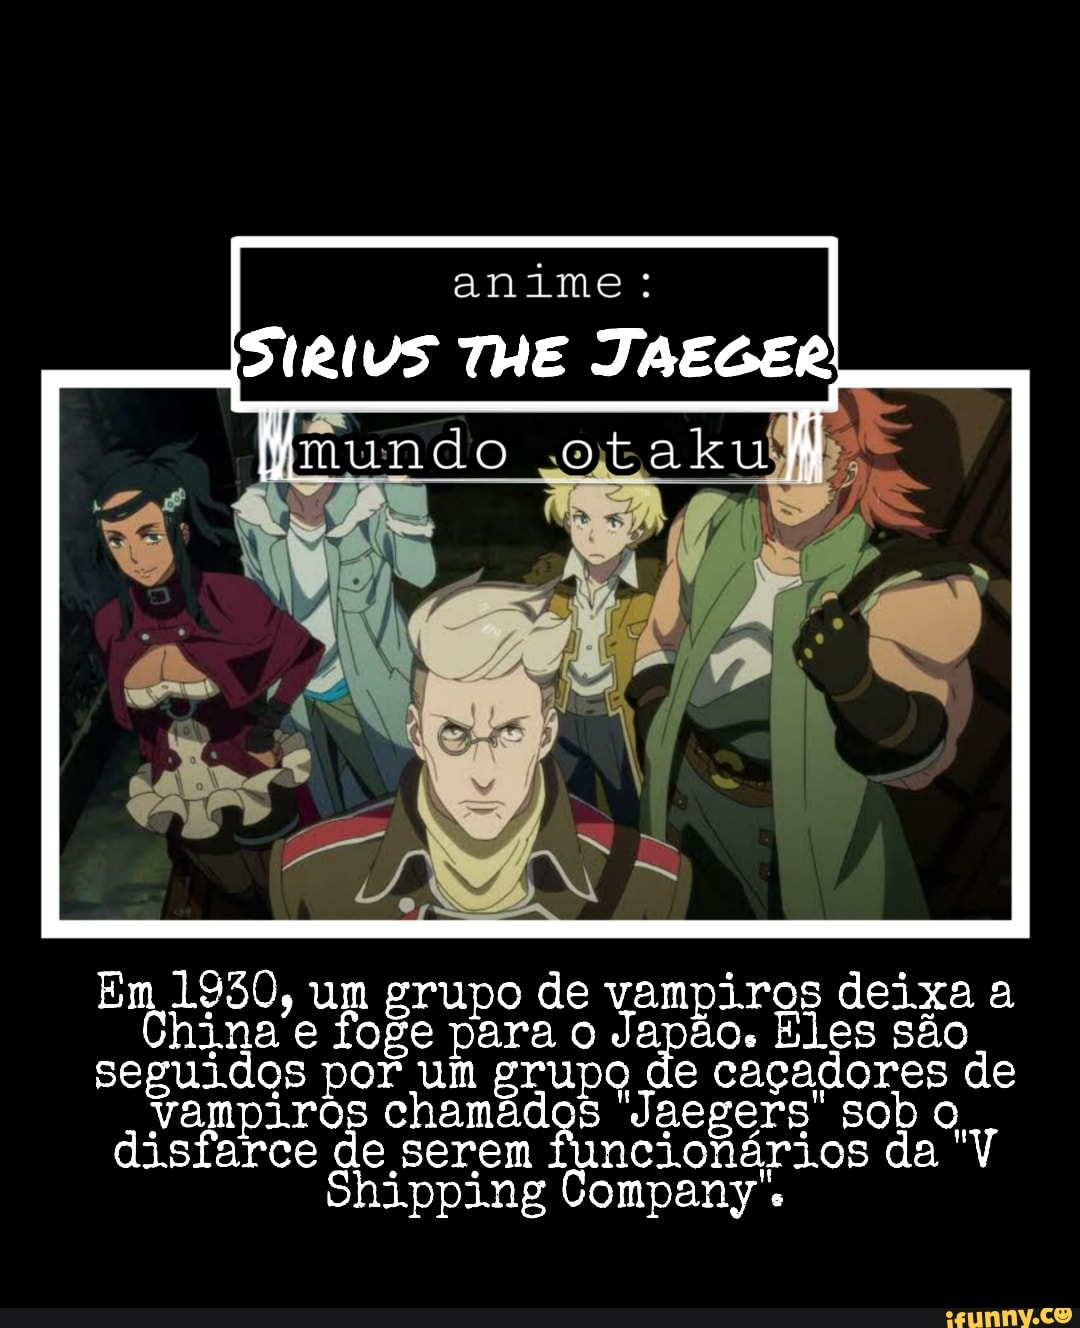 Sirius the Jaeger - Série 2018 - AdoroCinema